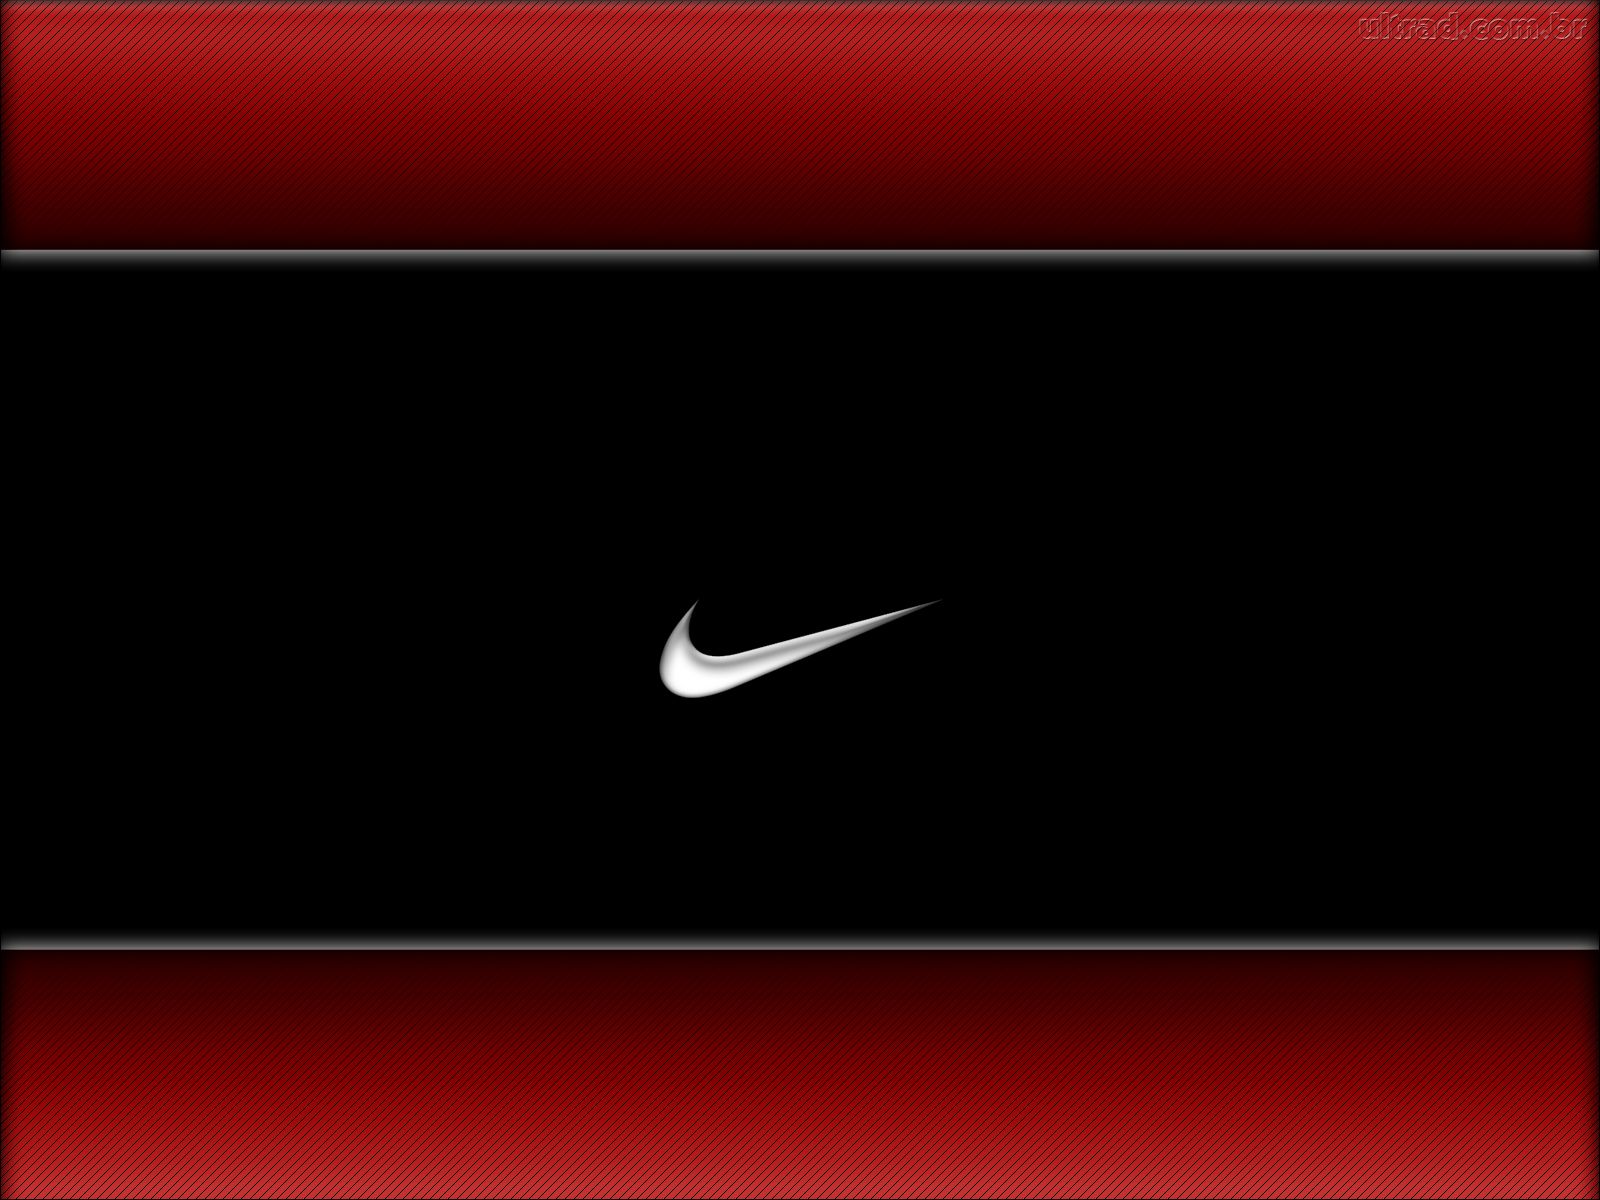 Hình ảnh Nike đồng hồ để tường sẽ khiến bạn say mê với thương hiệu này. Hãy tải về miễn phí và cùng ngắm nhìn những đường nét tinh tế, phong cách của Nike logo. Đừng bỏ qua cơ hội độc đáo này!